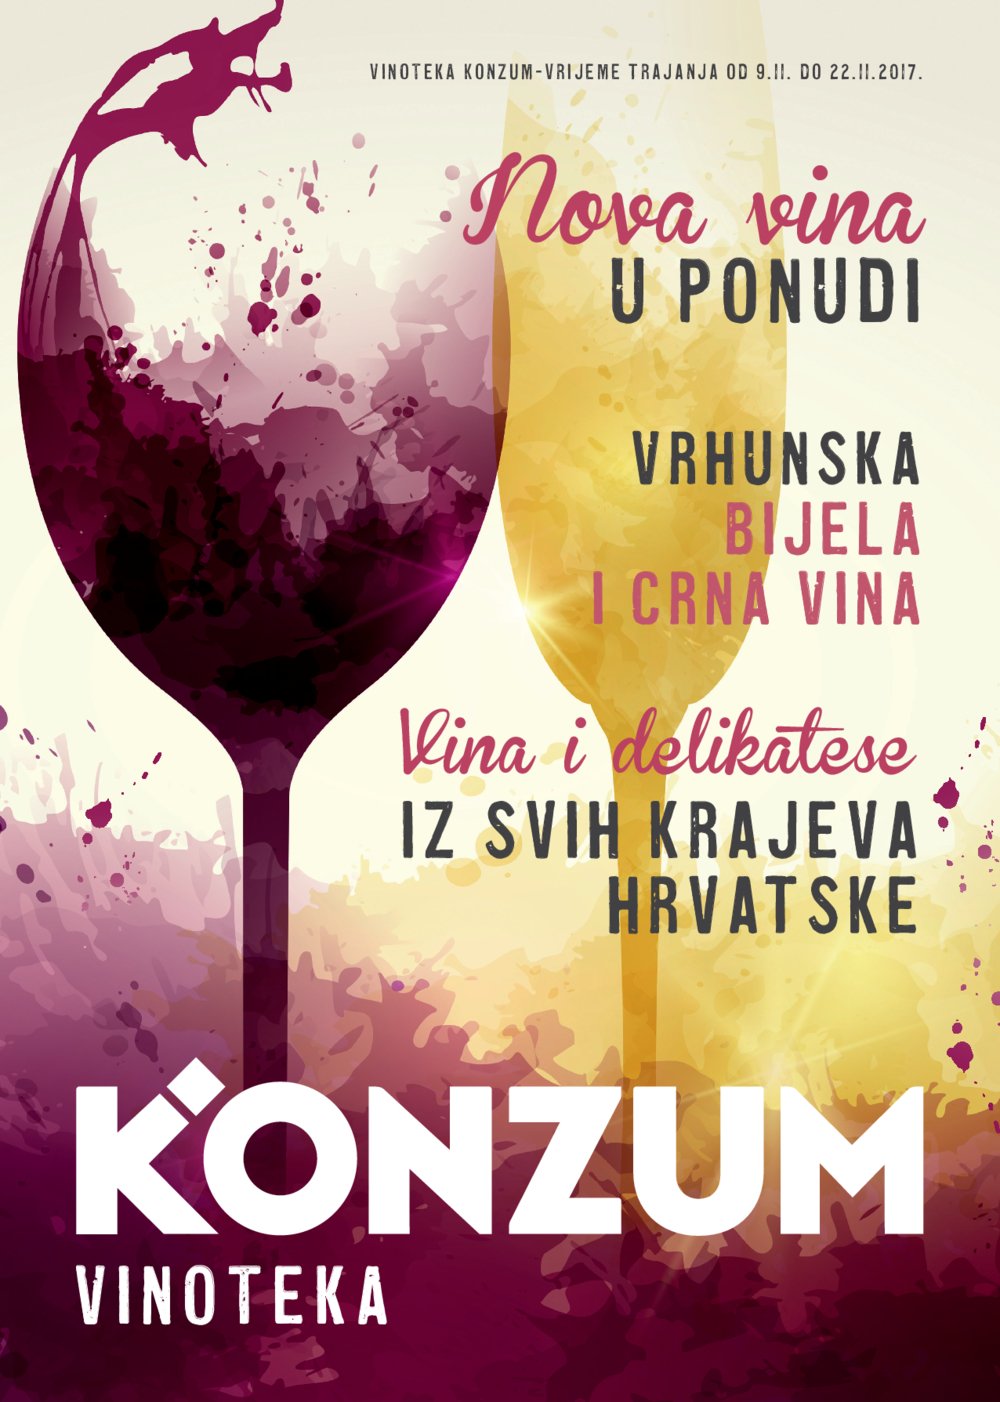 Konzum katalog Vinoteka 09.11.-22.11.2017.